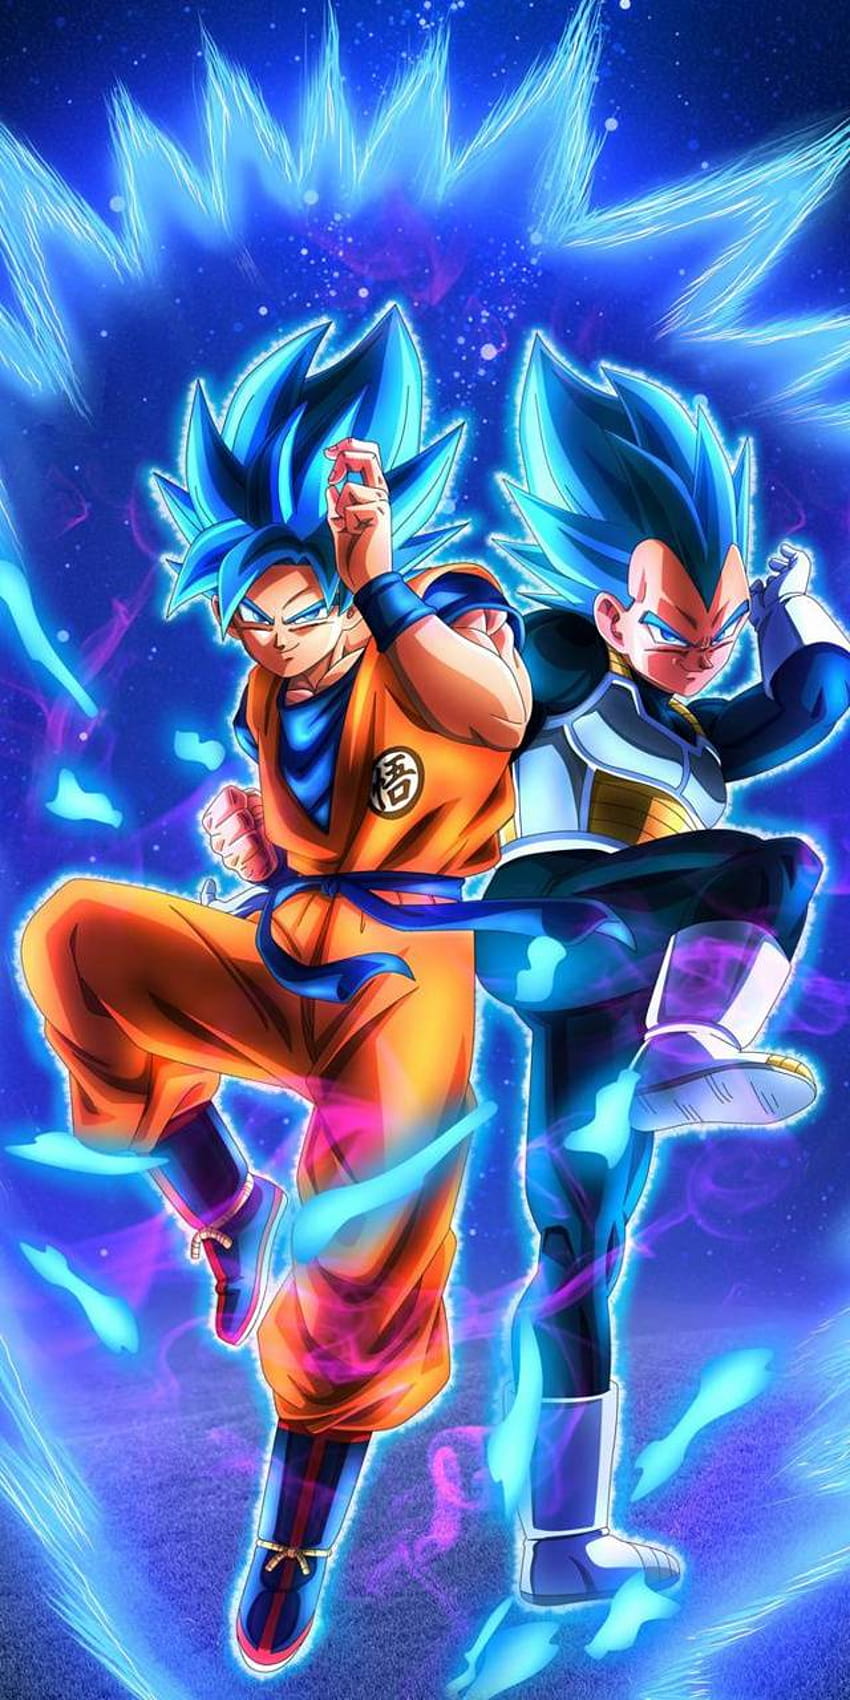 Goku i Vegeta od LegendsDB Tapeta na telefon HD